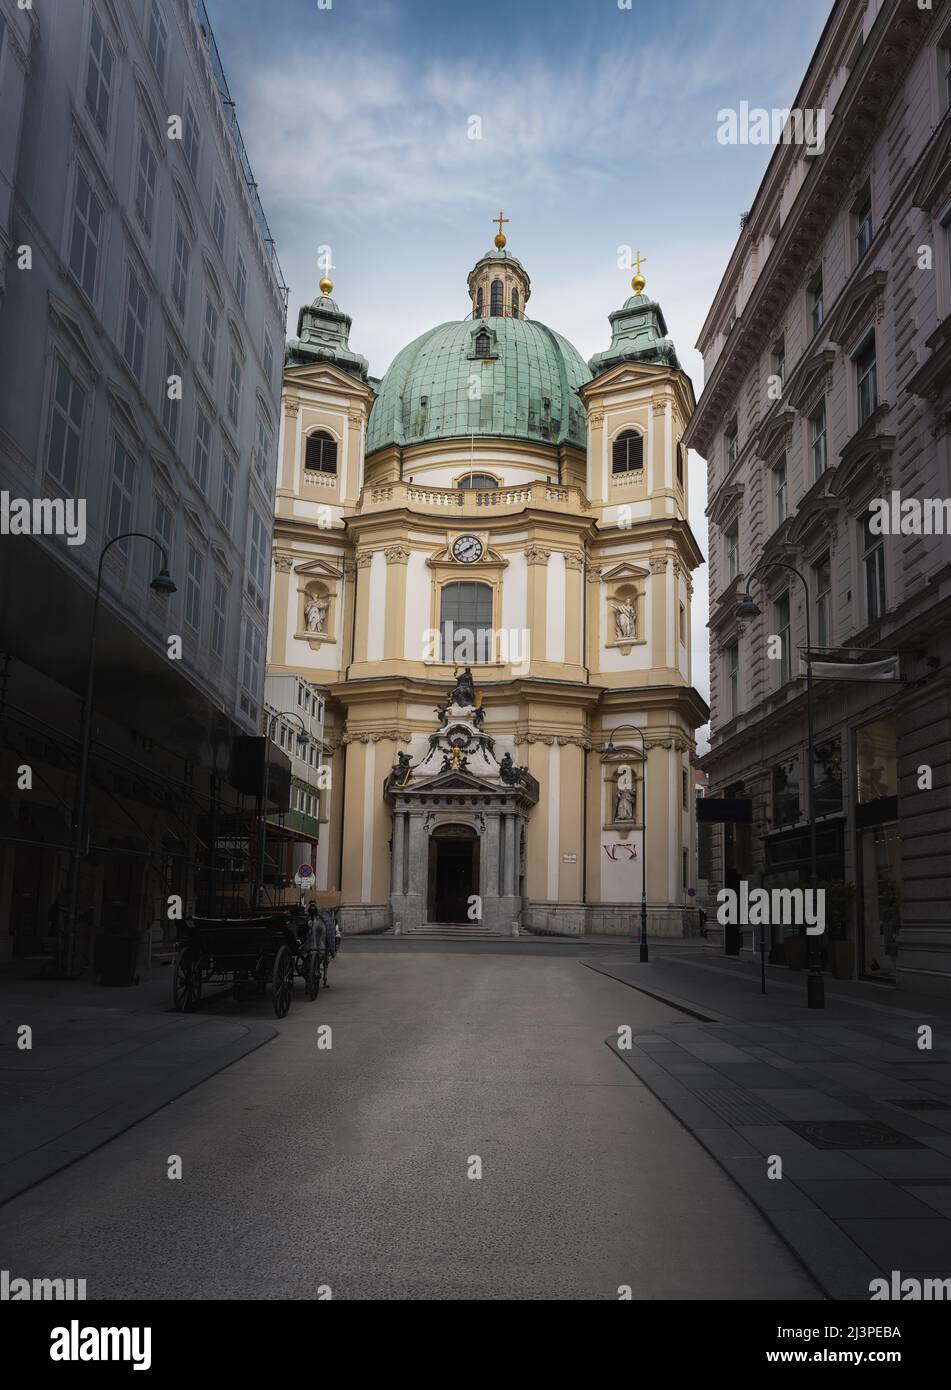 Église Saint-Pierre (Peterskirche) - Vienne, Autriche Banque D'Images